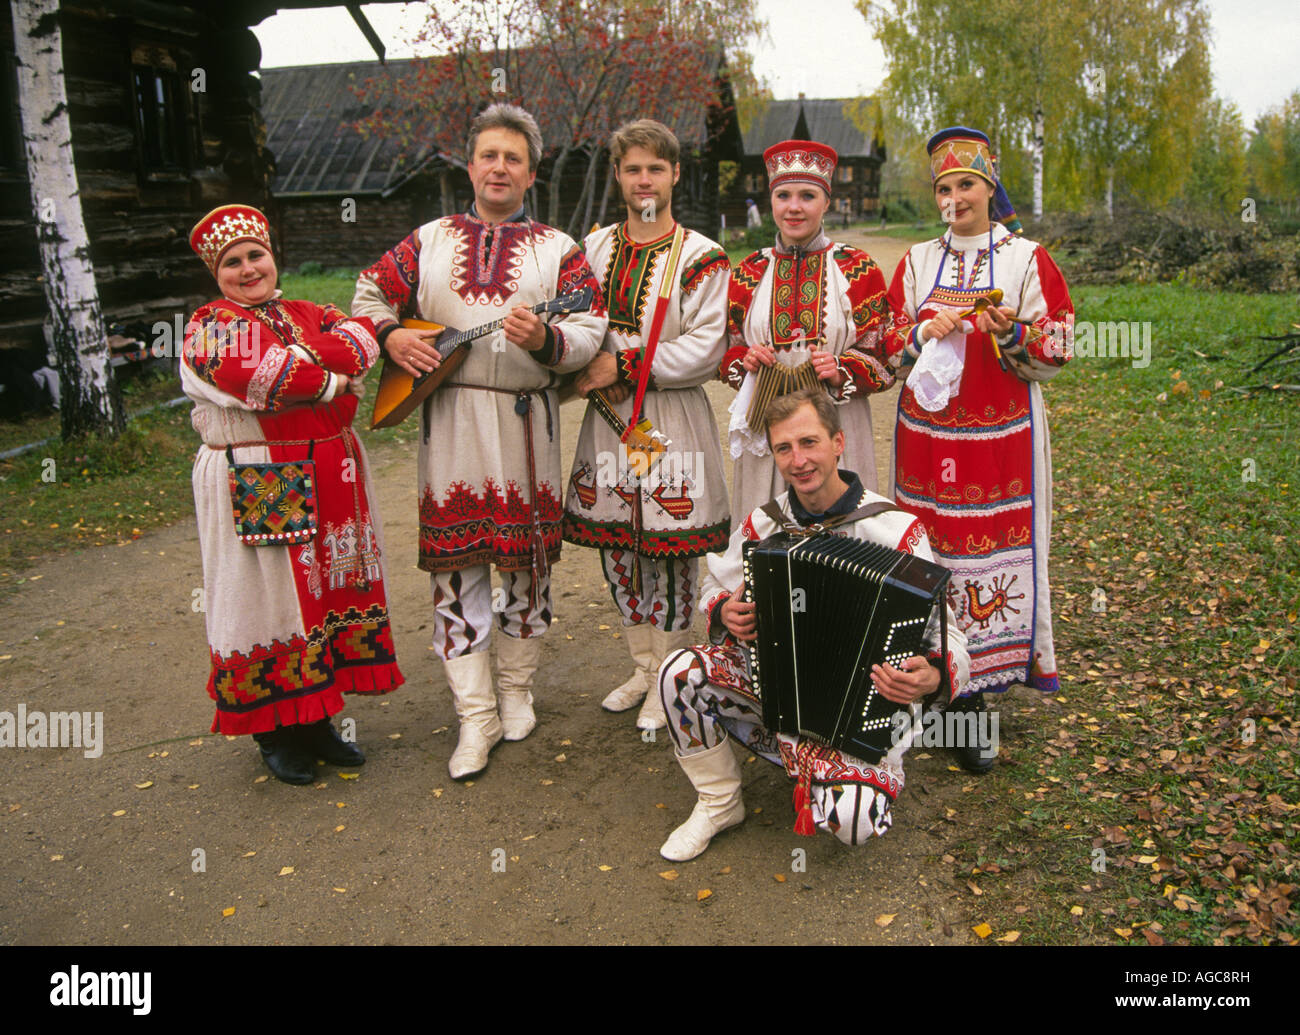 Musica russa immagini e fotografie stock ad alta risoluzione - Alamy